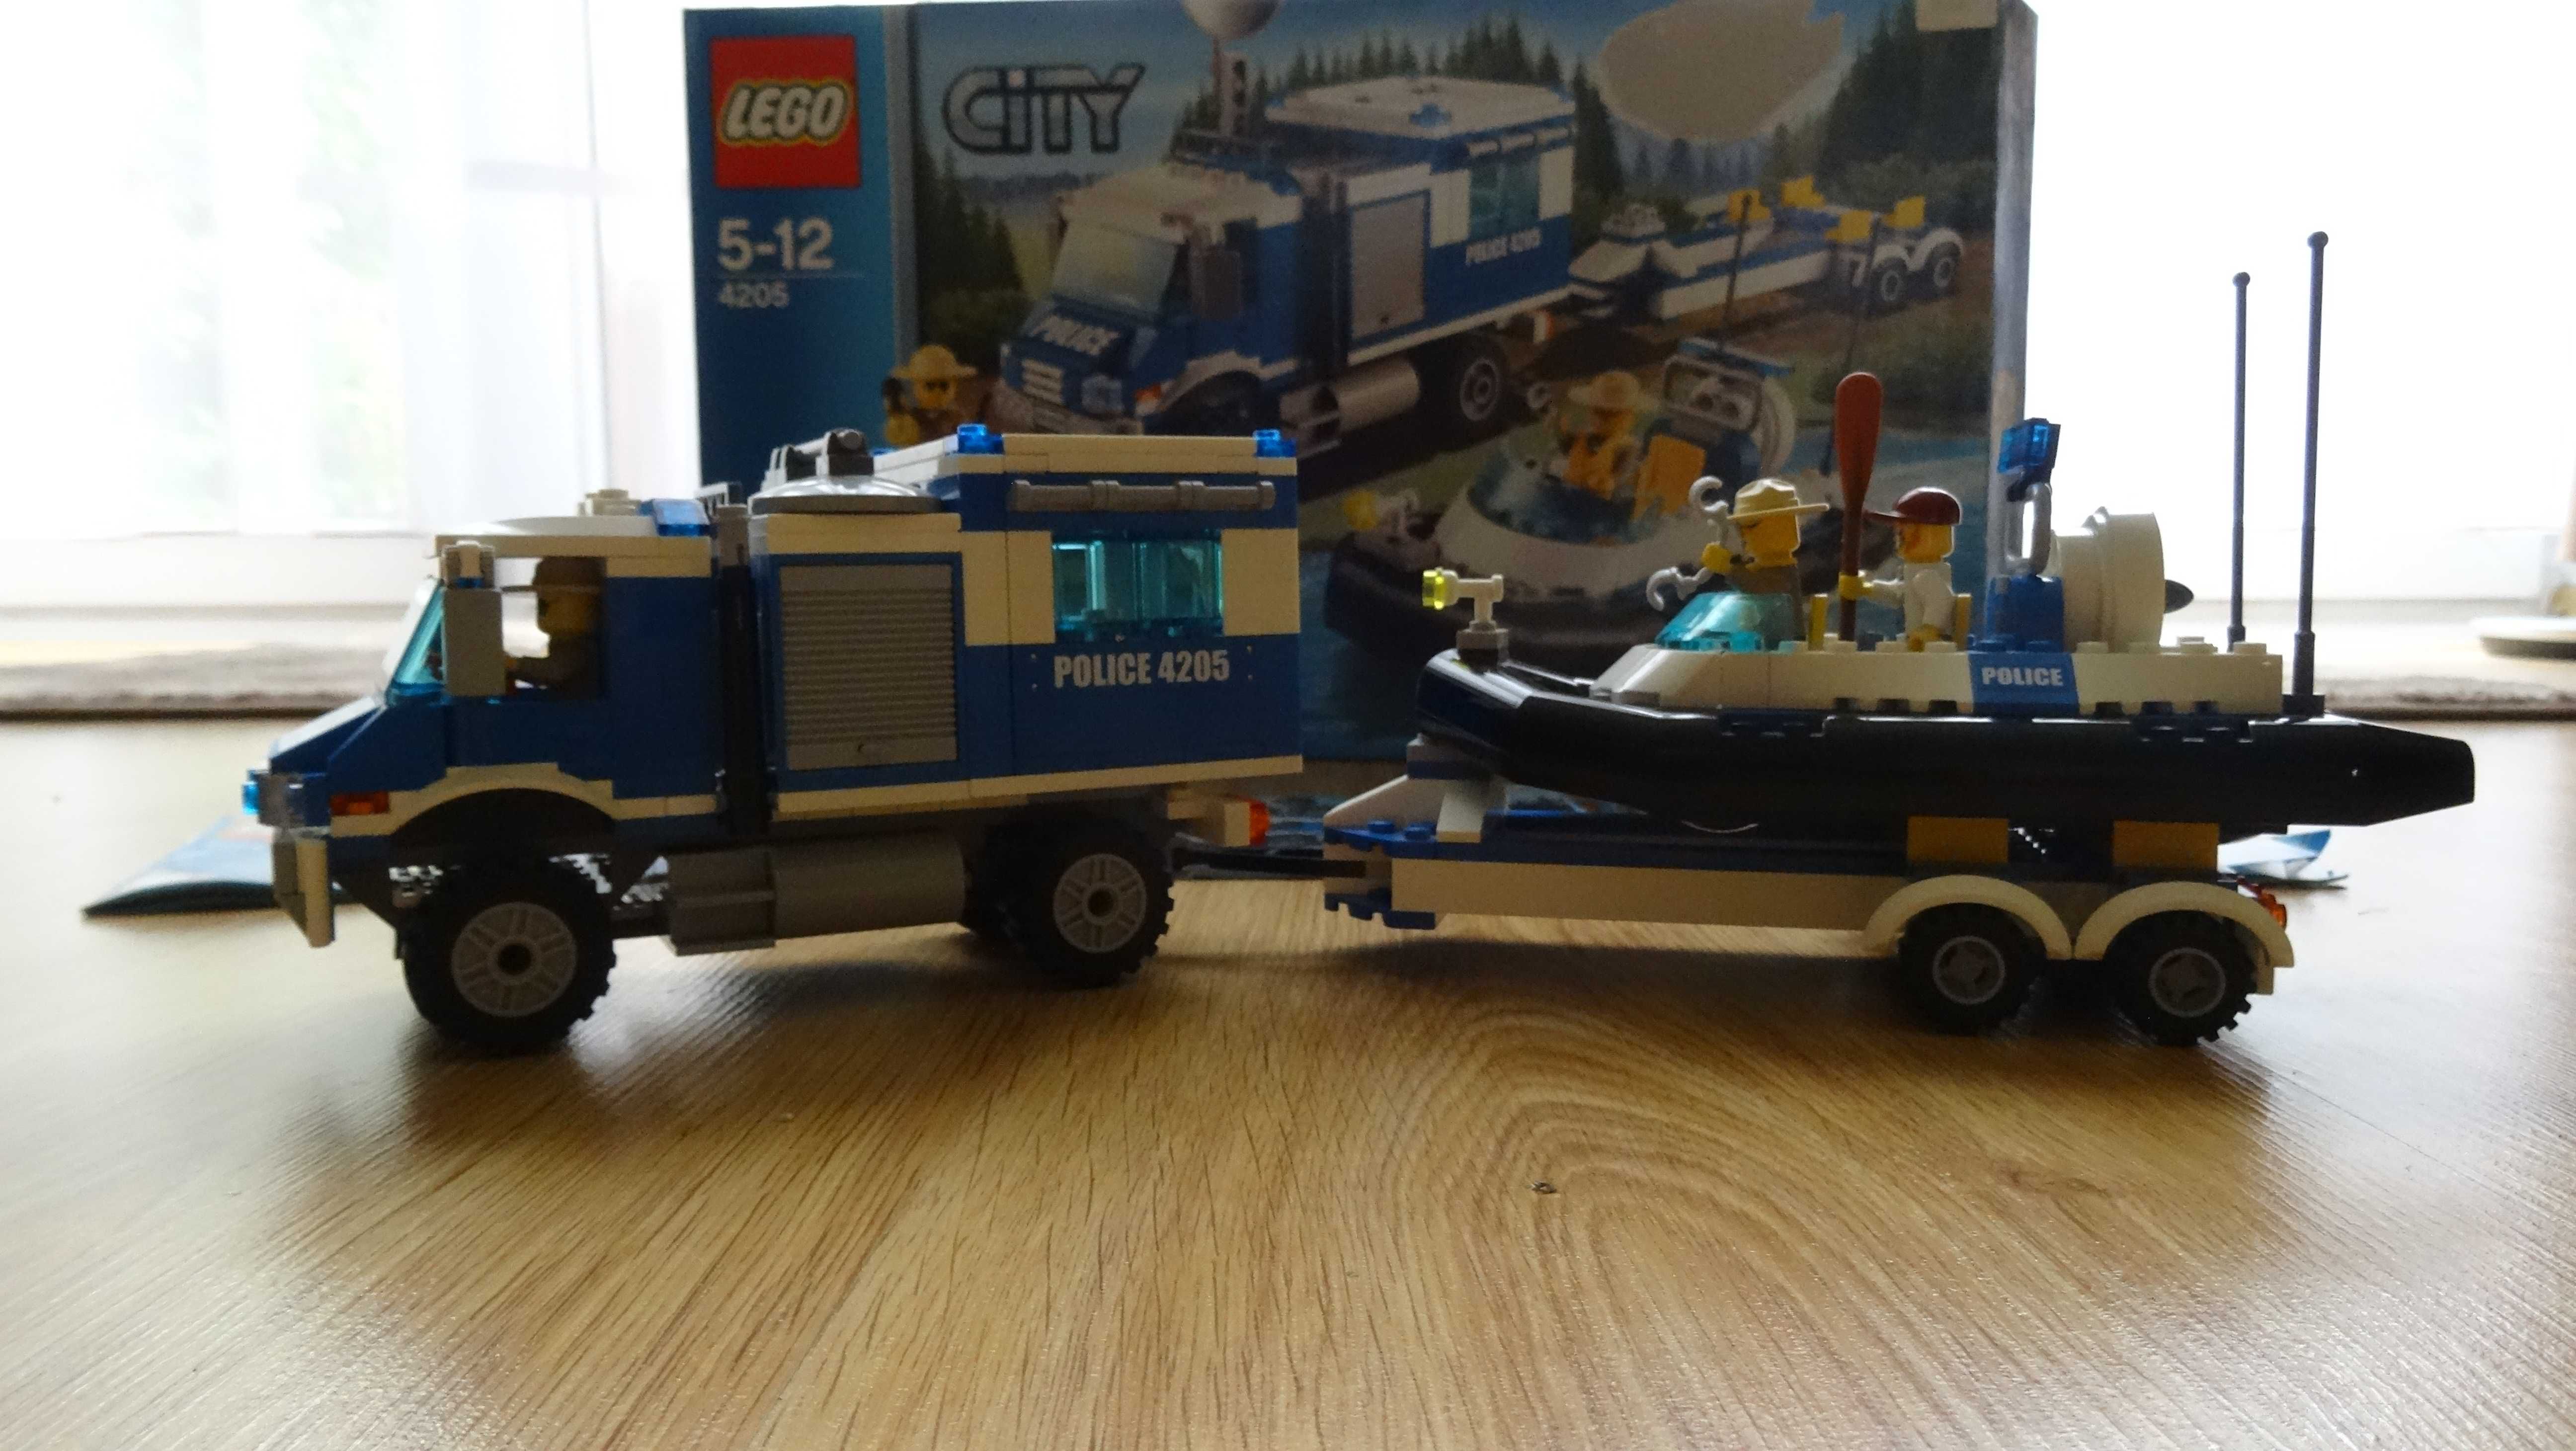 Lego City 4205 Terenowe centrum dowodzenia